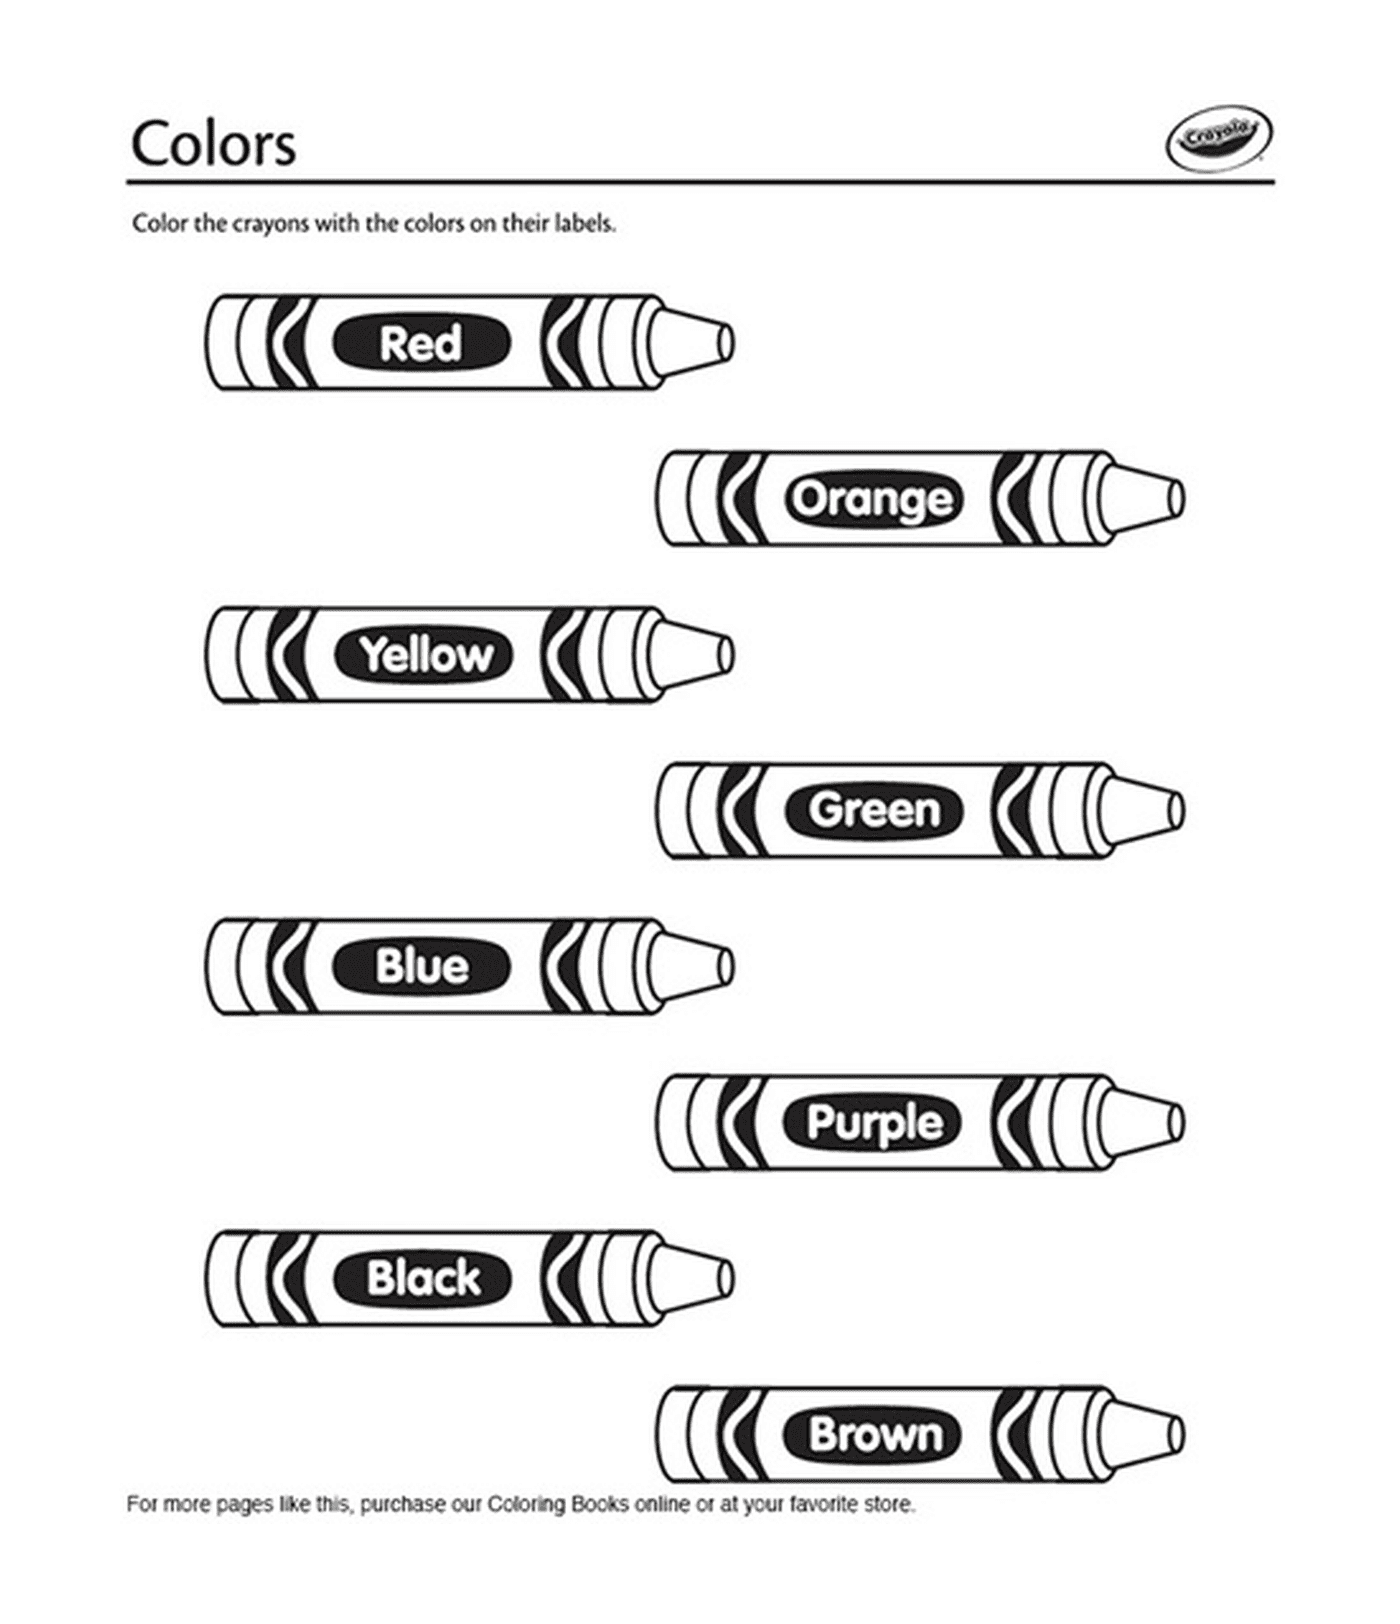  Lápices de colores en inglés de Crayola 